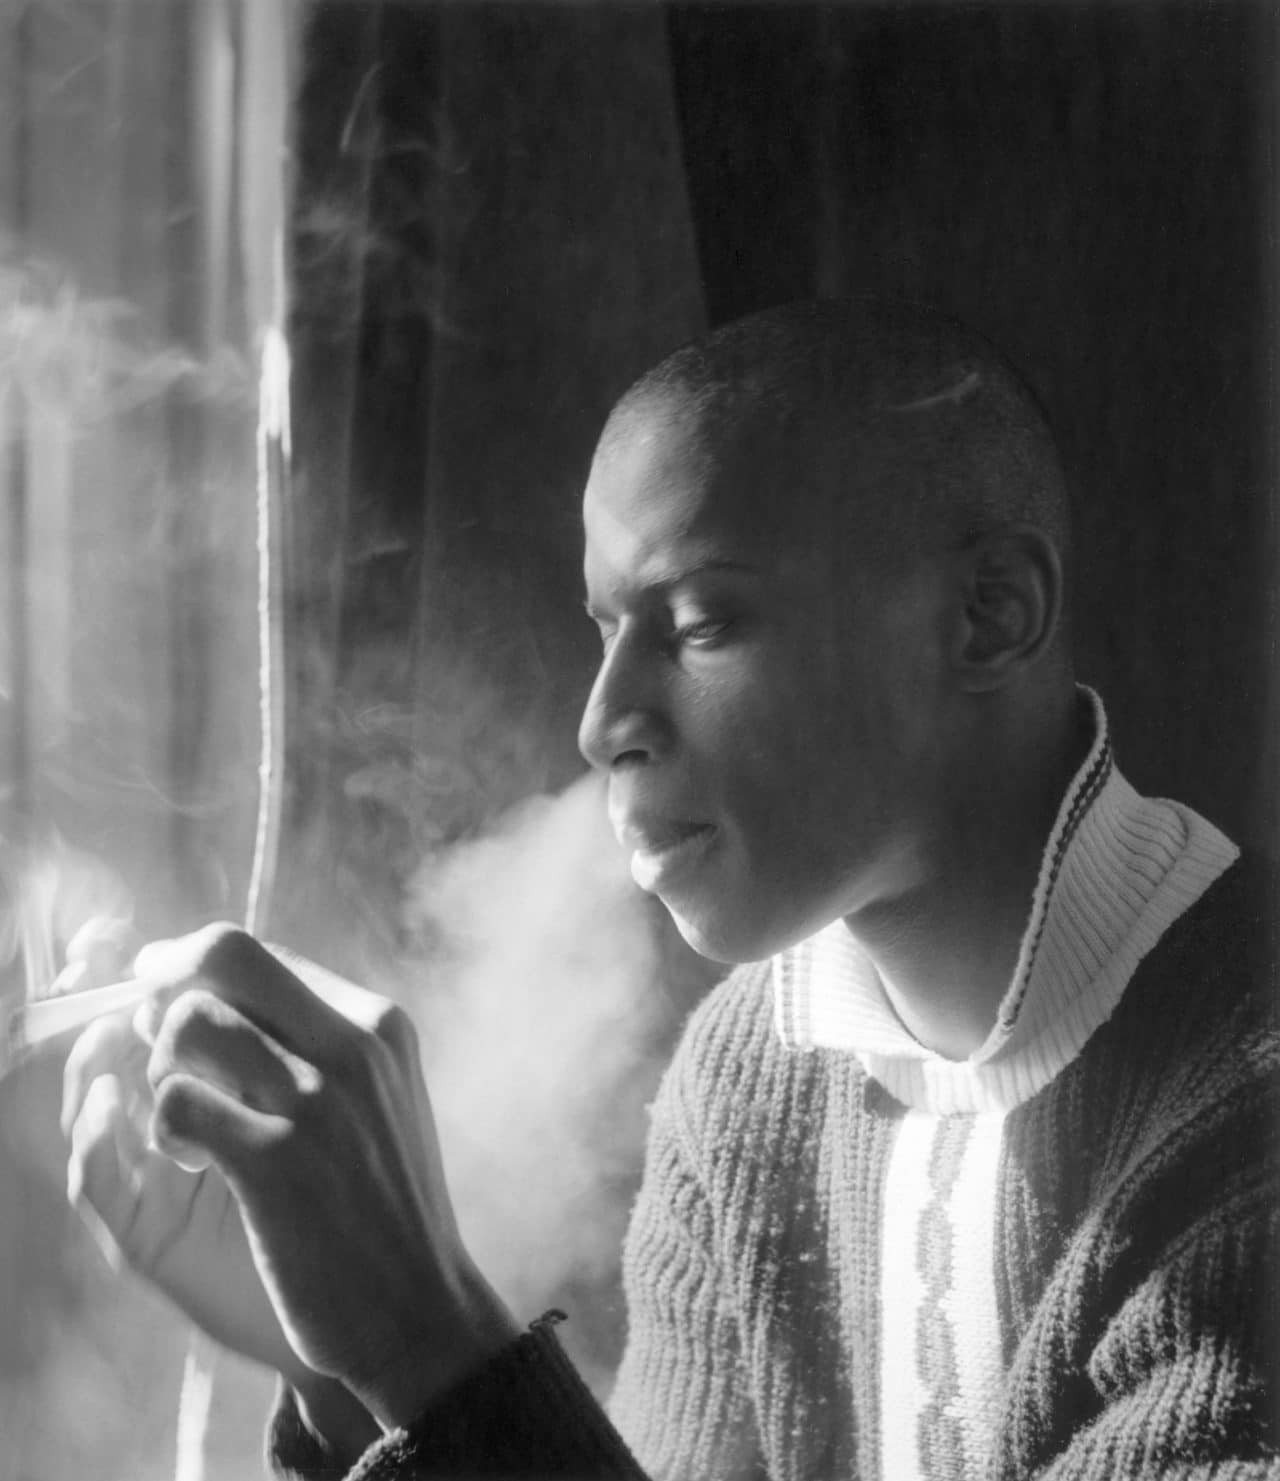 Курящий Стэн, 1959. Фотограф Имоджен Каннингем